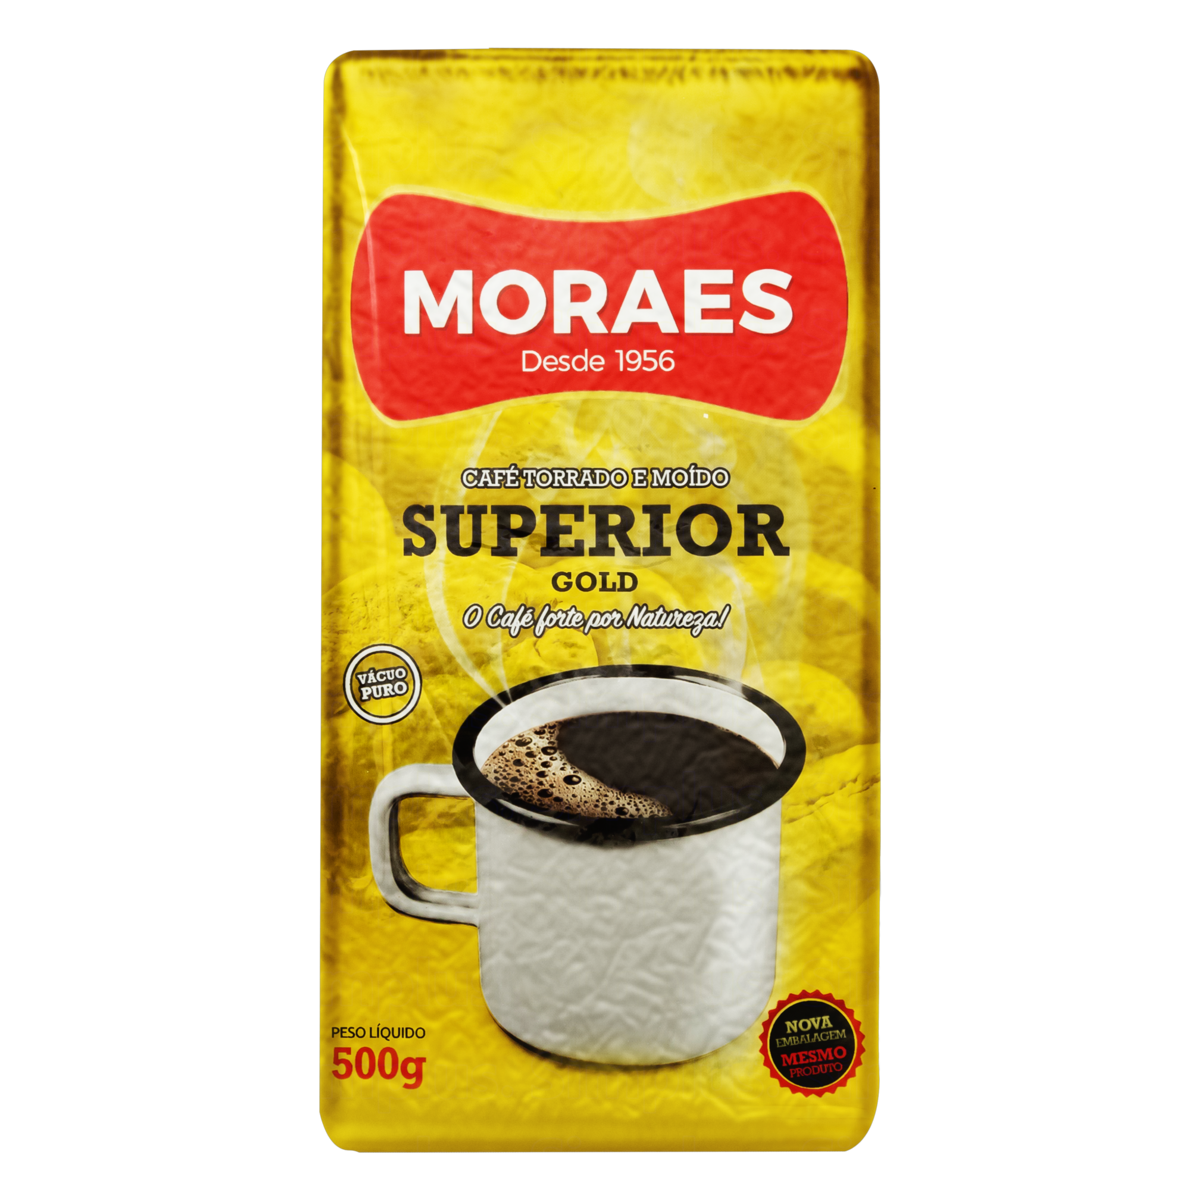 7896235100195 - CAFÉ TORRADO E MOÍDO A VÁCUO SUPERIOR GOLD MORAES PACOTE 500G